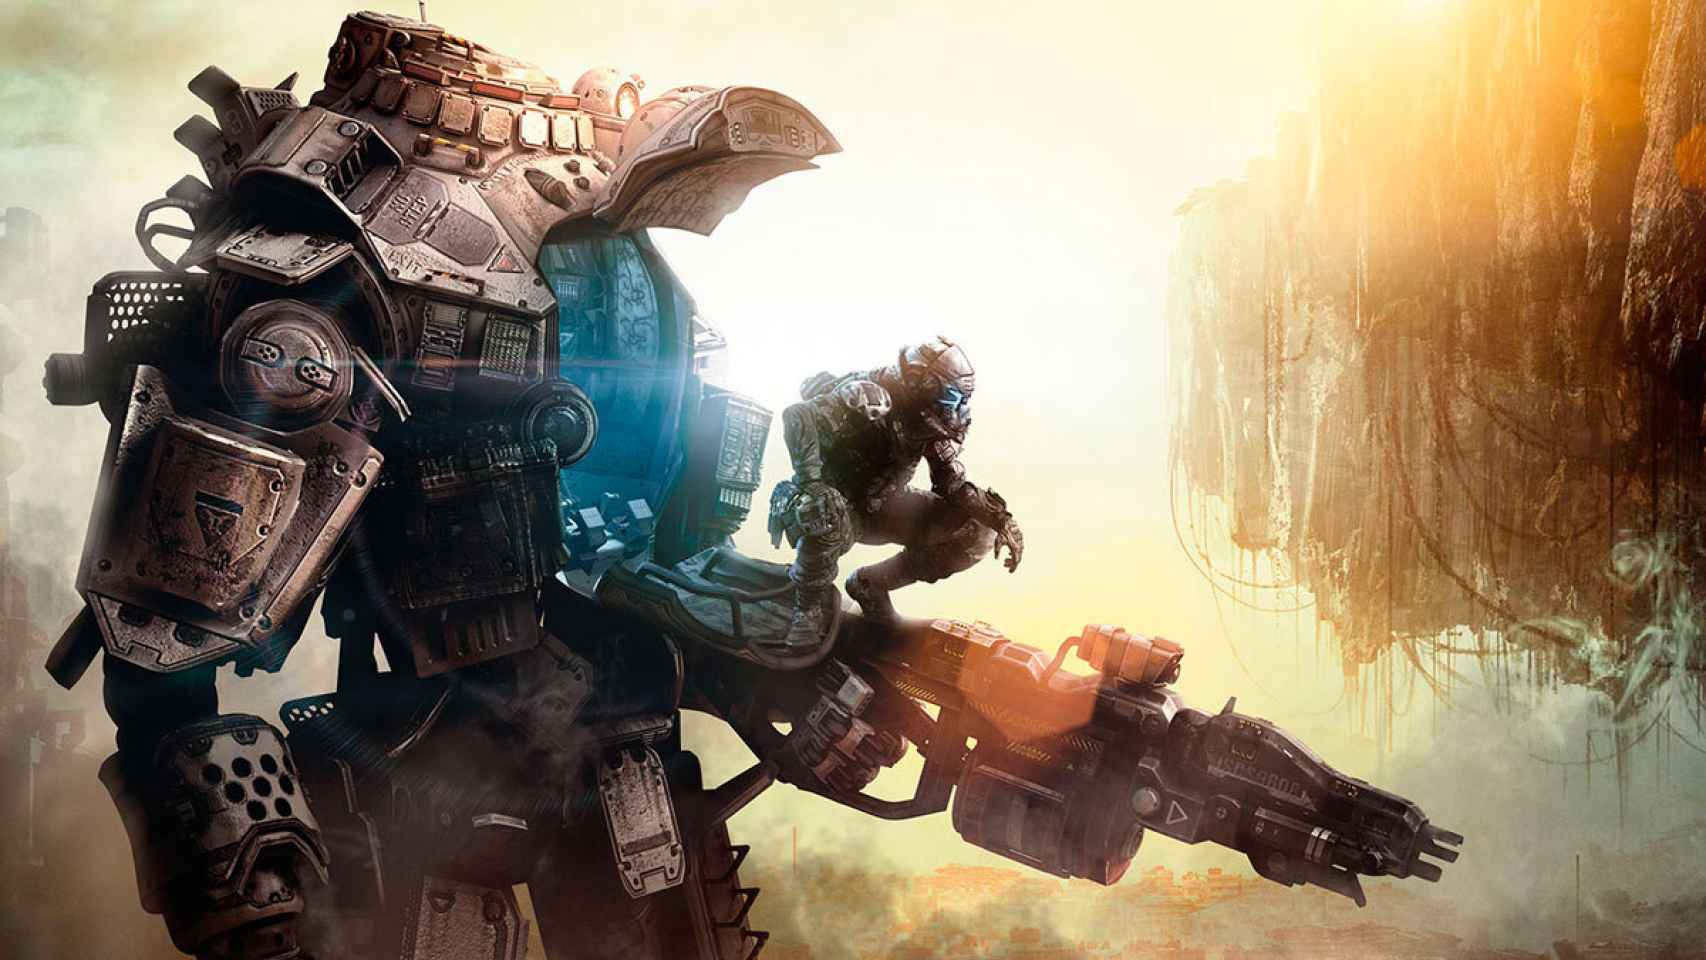 Titanfall, el juego de disparos de PC y Xbox, llegará a Android en 2016